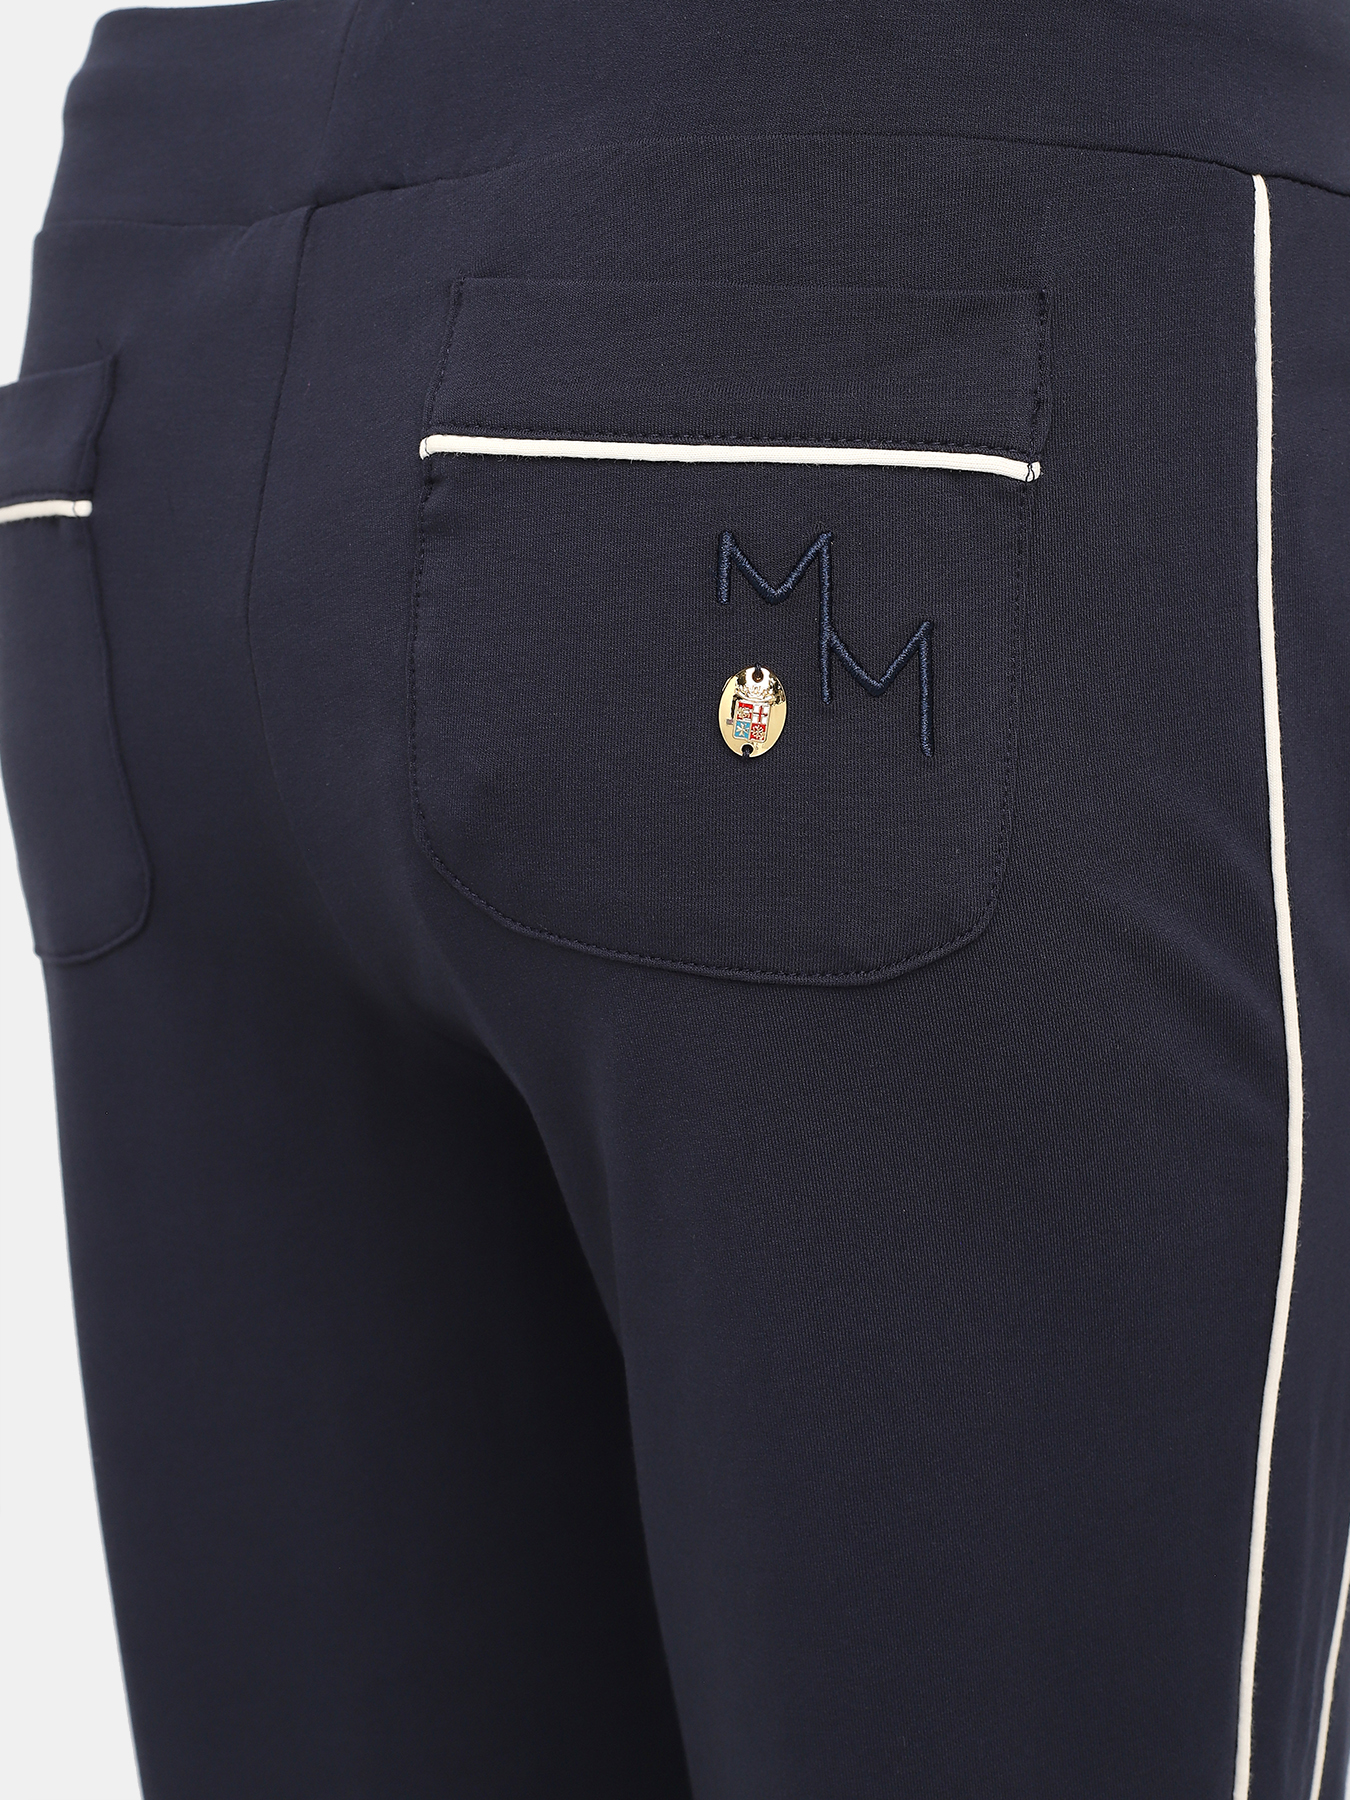 Спортивные брюки Marina Militare 425546-044, цвет синий, размер 46-48 - фото 3